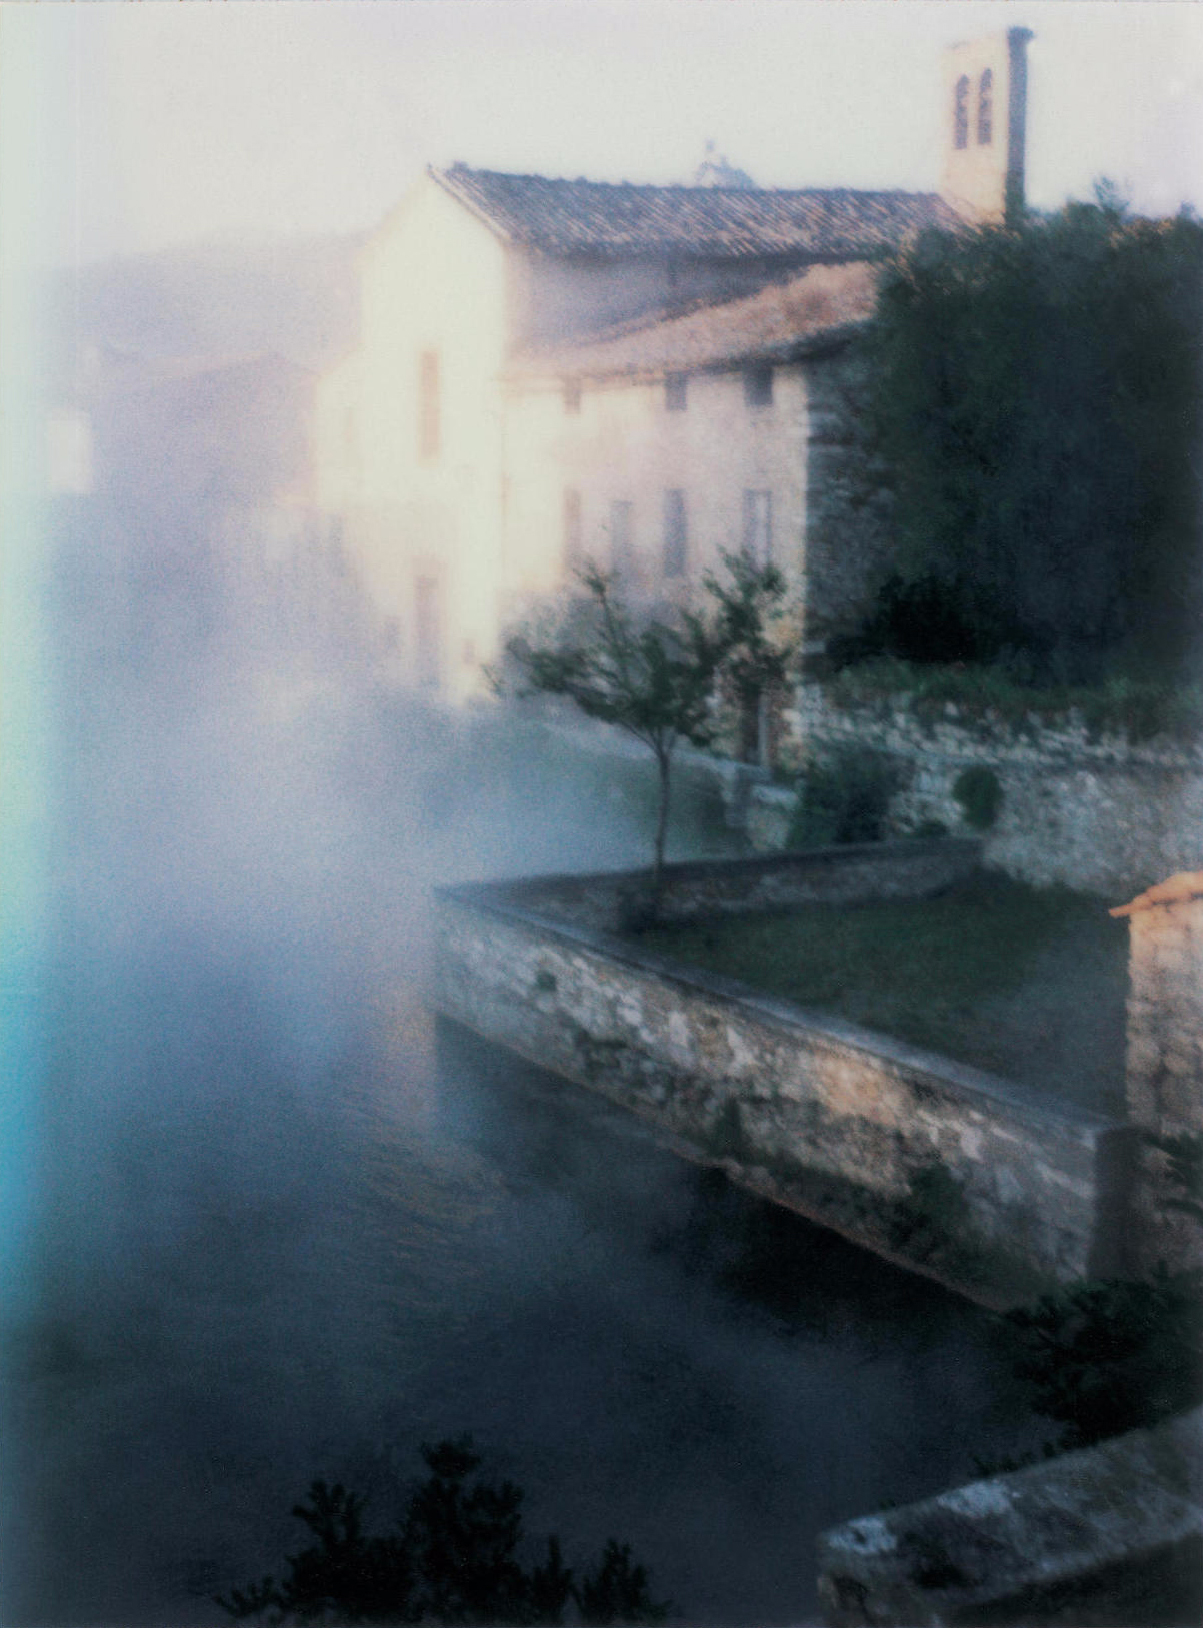 Баньо-Виньони (Сан-Квирико-д’Орча), Тоскана, август 1979, фото из собрания А.Тарковского